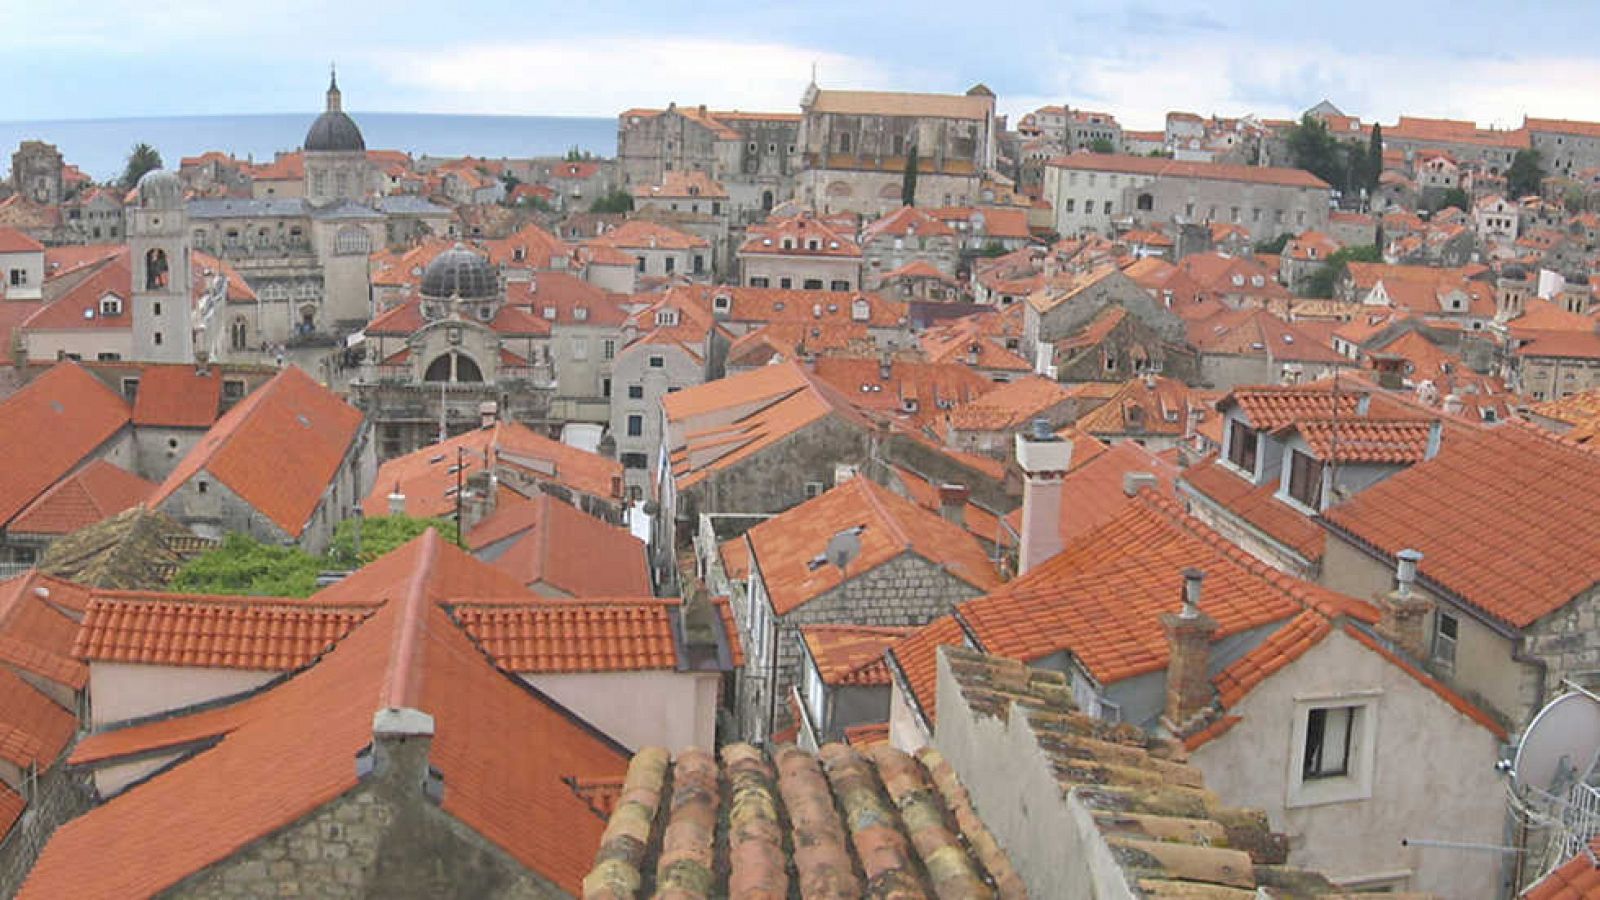 Grandes documentales - Patrimonio de la humanidad: Ciudad vieja de Dubrovnik (Croacia)